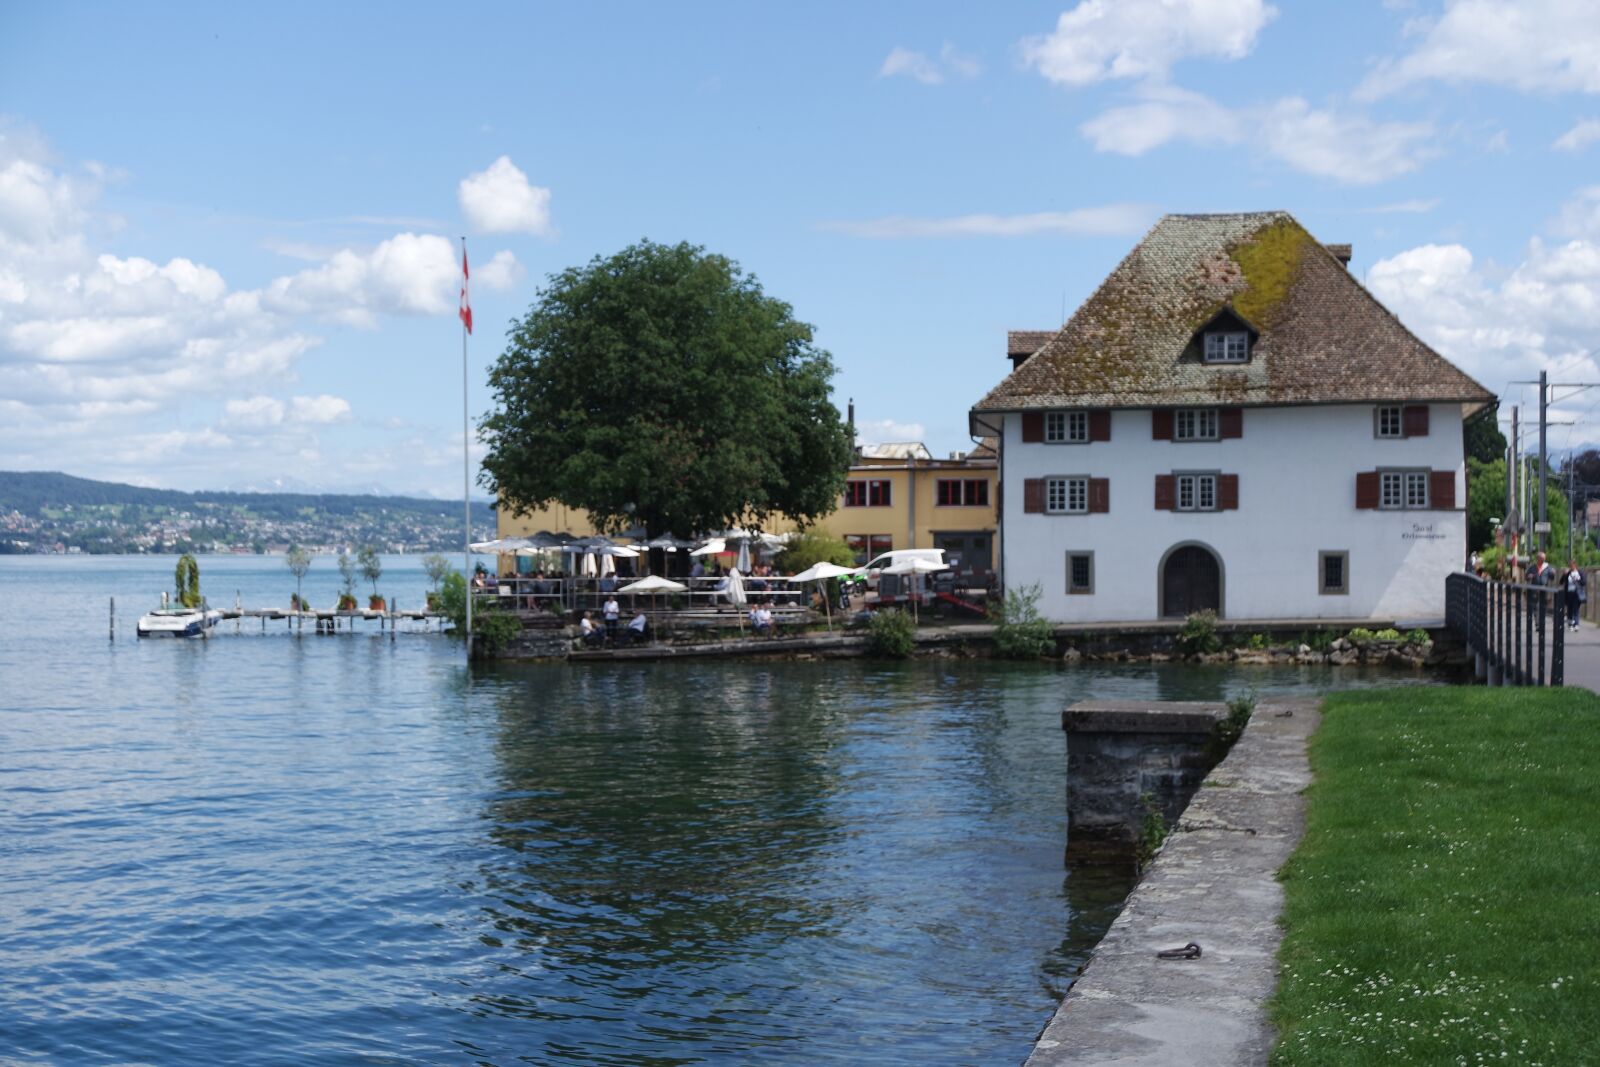 Samsung NX3000 sample photo. Zurich, horgen, lake zurich photography